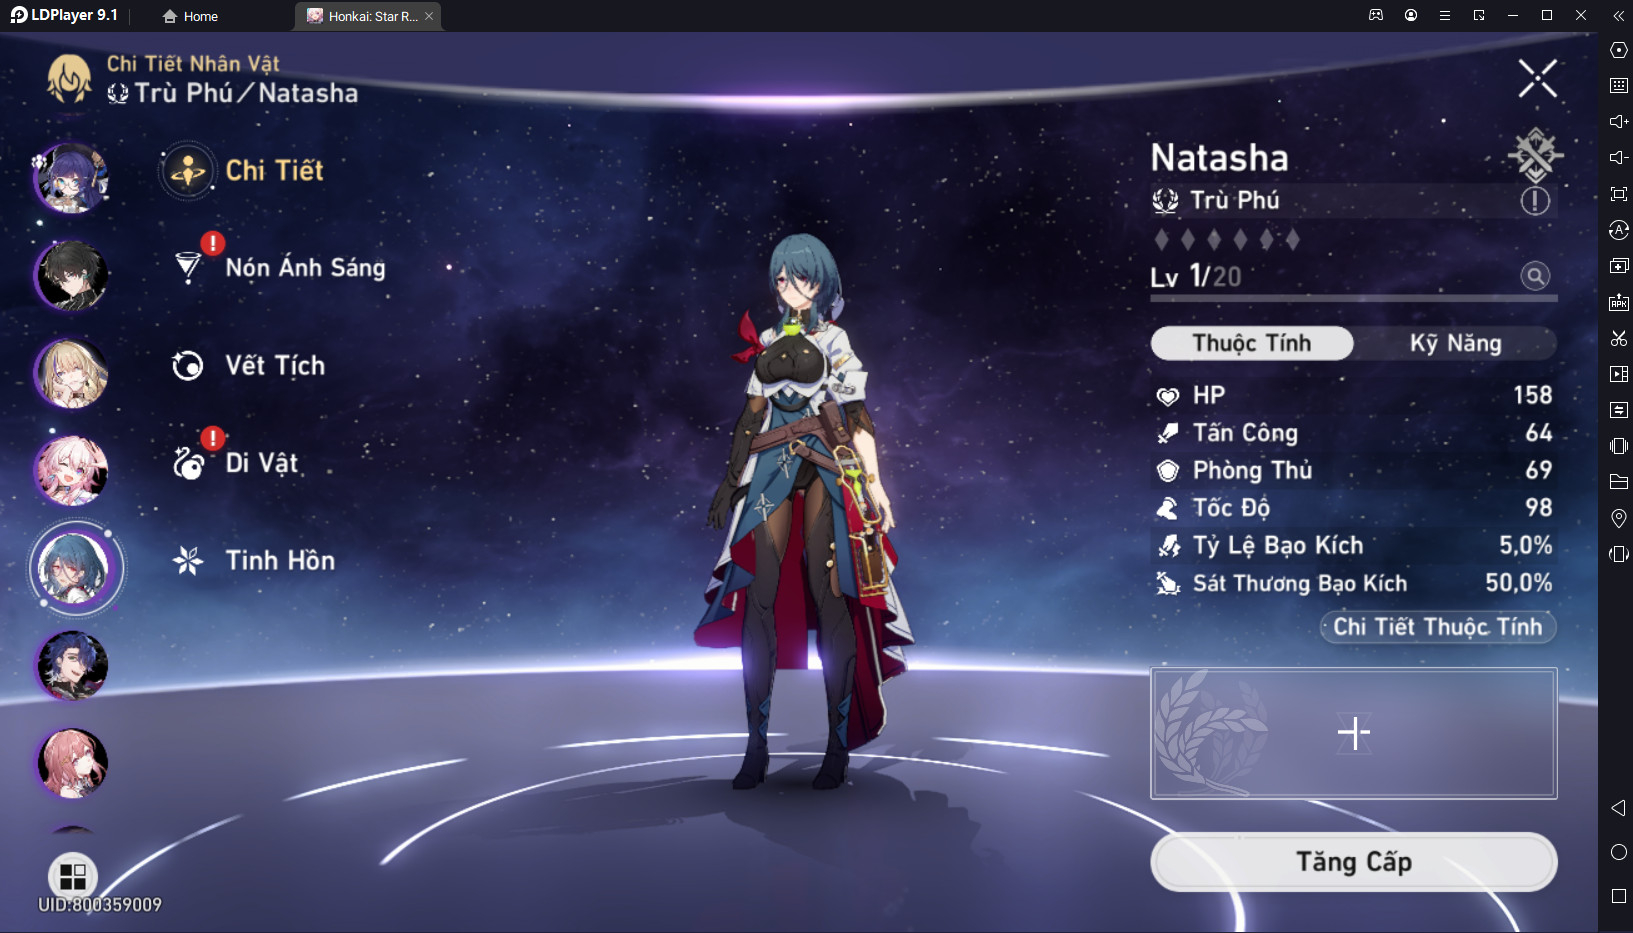 VER 1.0 ] Natasha build as a Healer Honkai: Star Rail | HoYoLAB